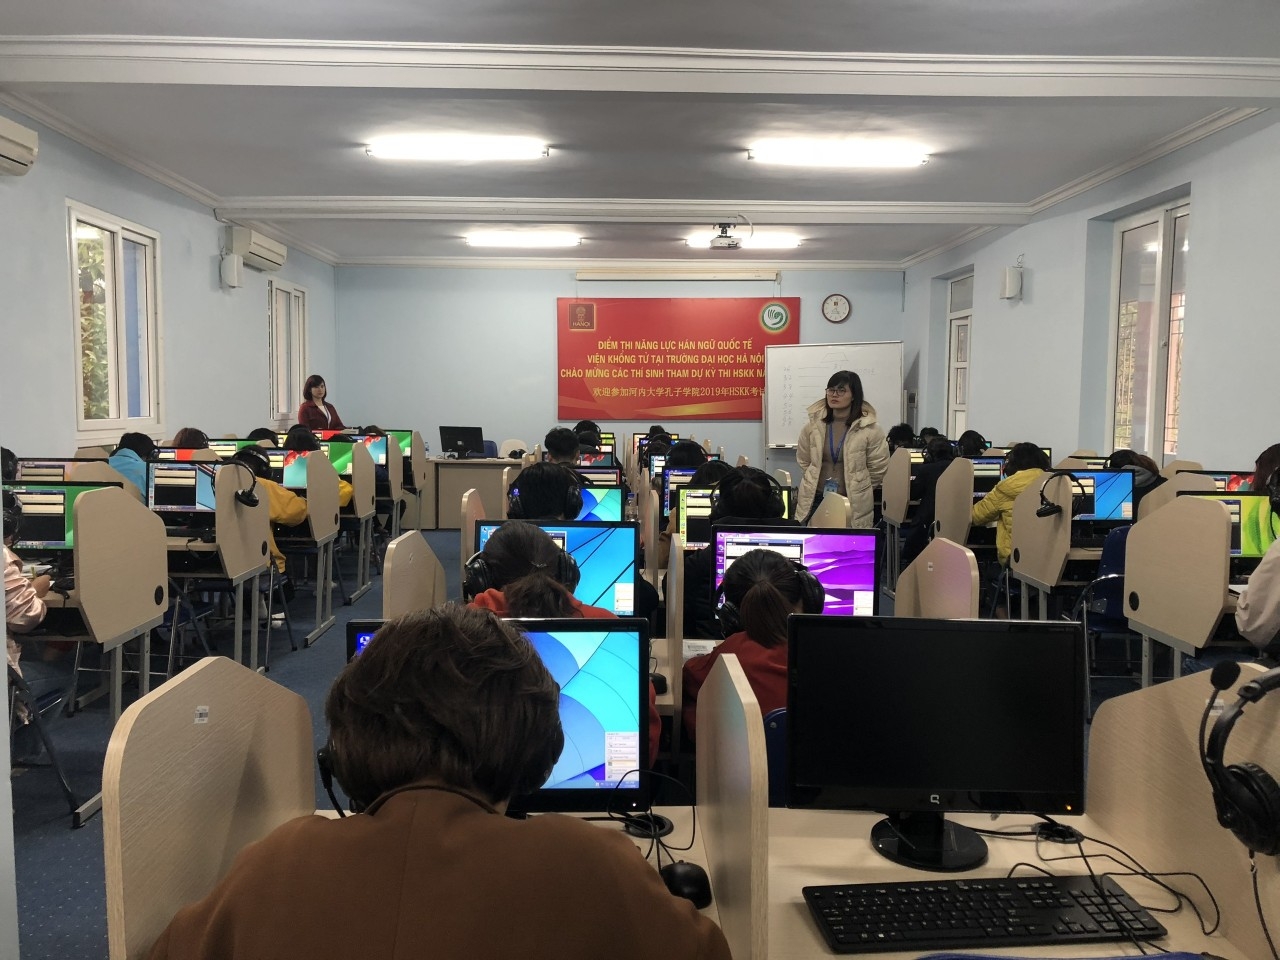 考生在河内大学孔子学院考点参加机考。